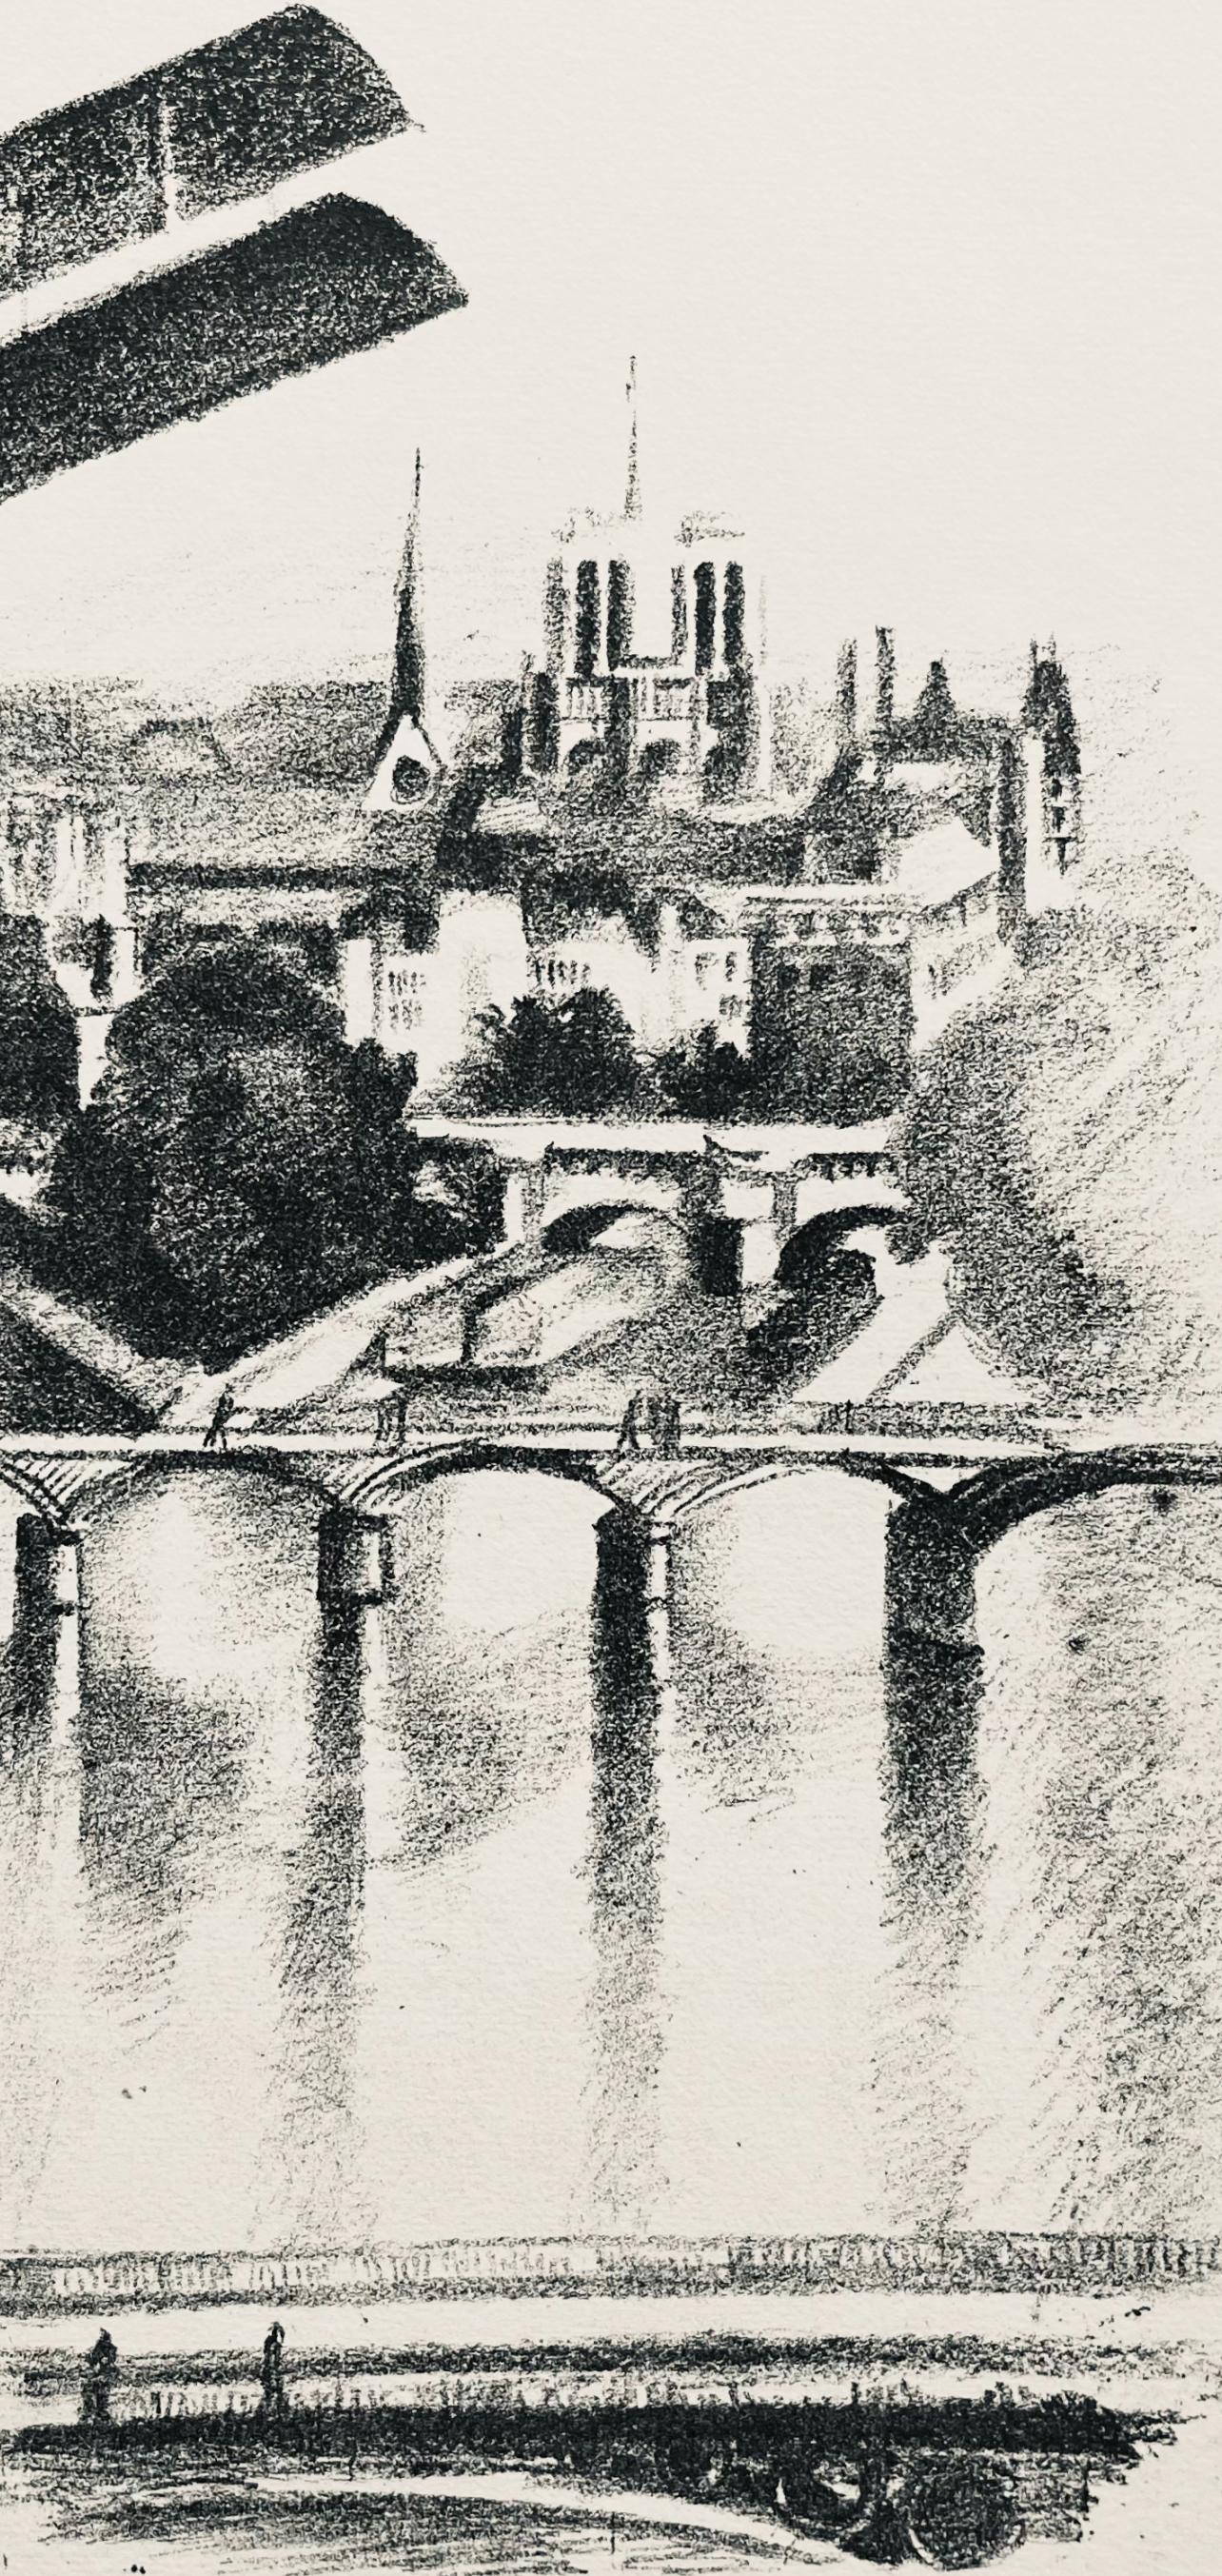 Delaunay, Les ponts de Paris et Notre-Dame (H. 720-728), Allo! Paris! (after) - Print by Robert Delaunay